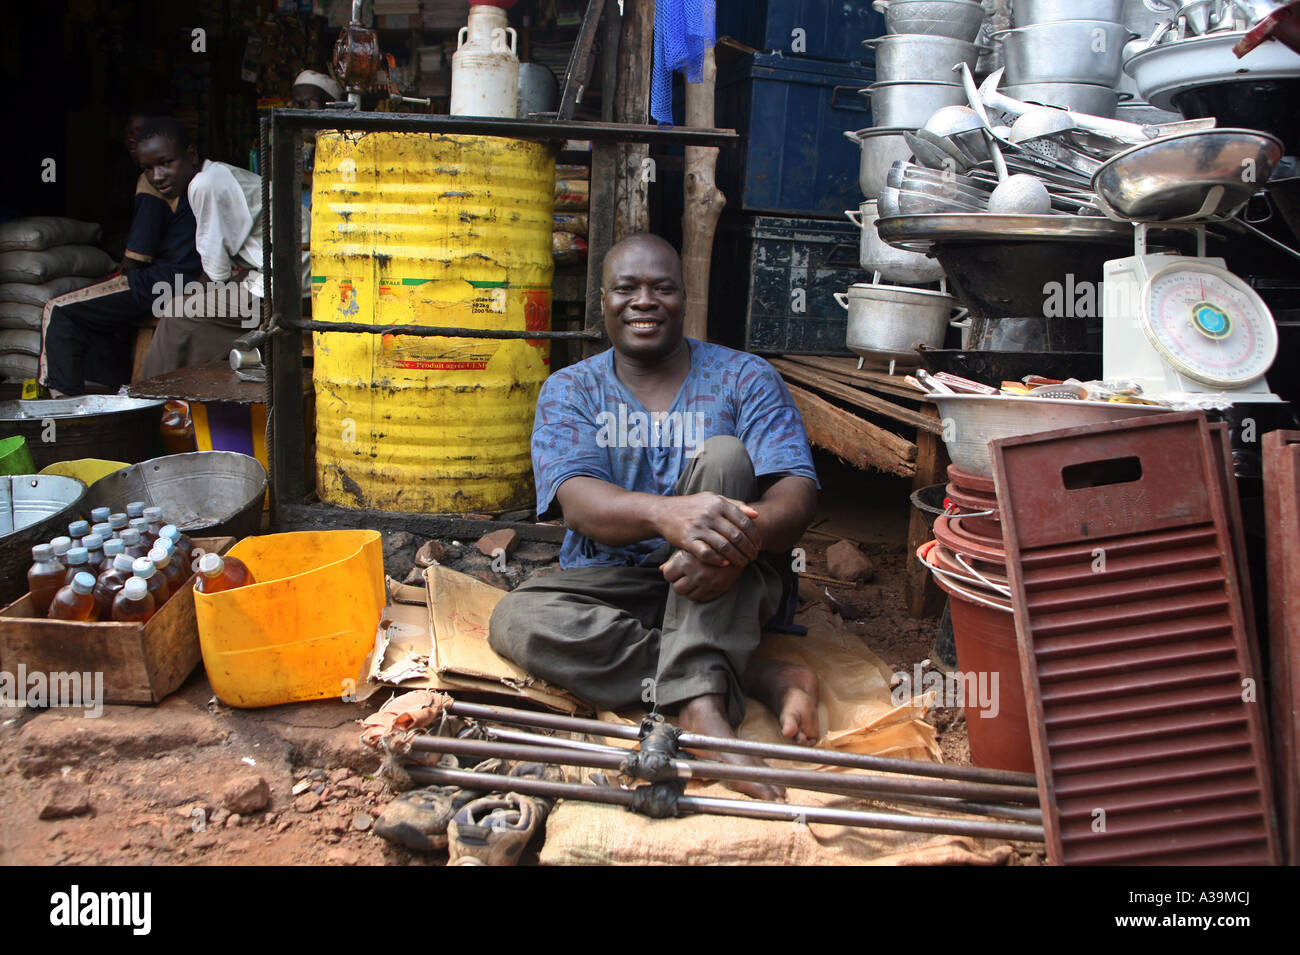 Un mendiant mobilité par la poliomyélite mendiant dans un marché local BAMAKO Mali, Afrique Banque D'Images